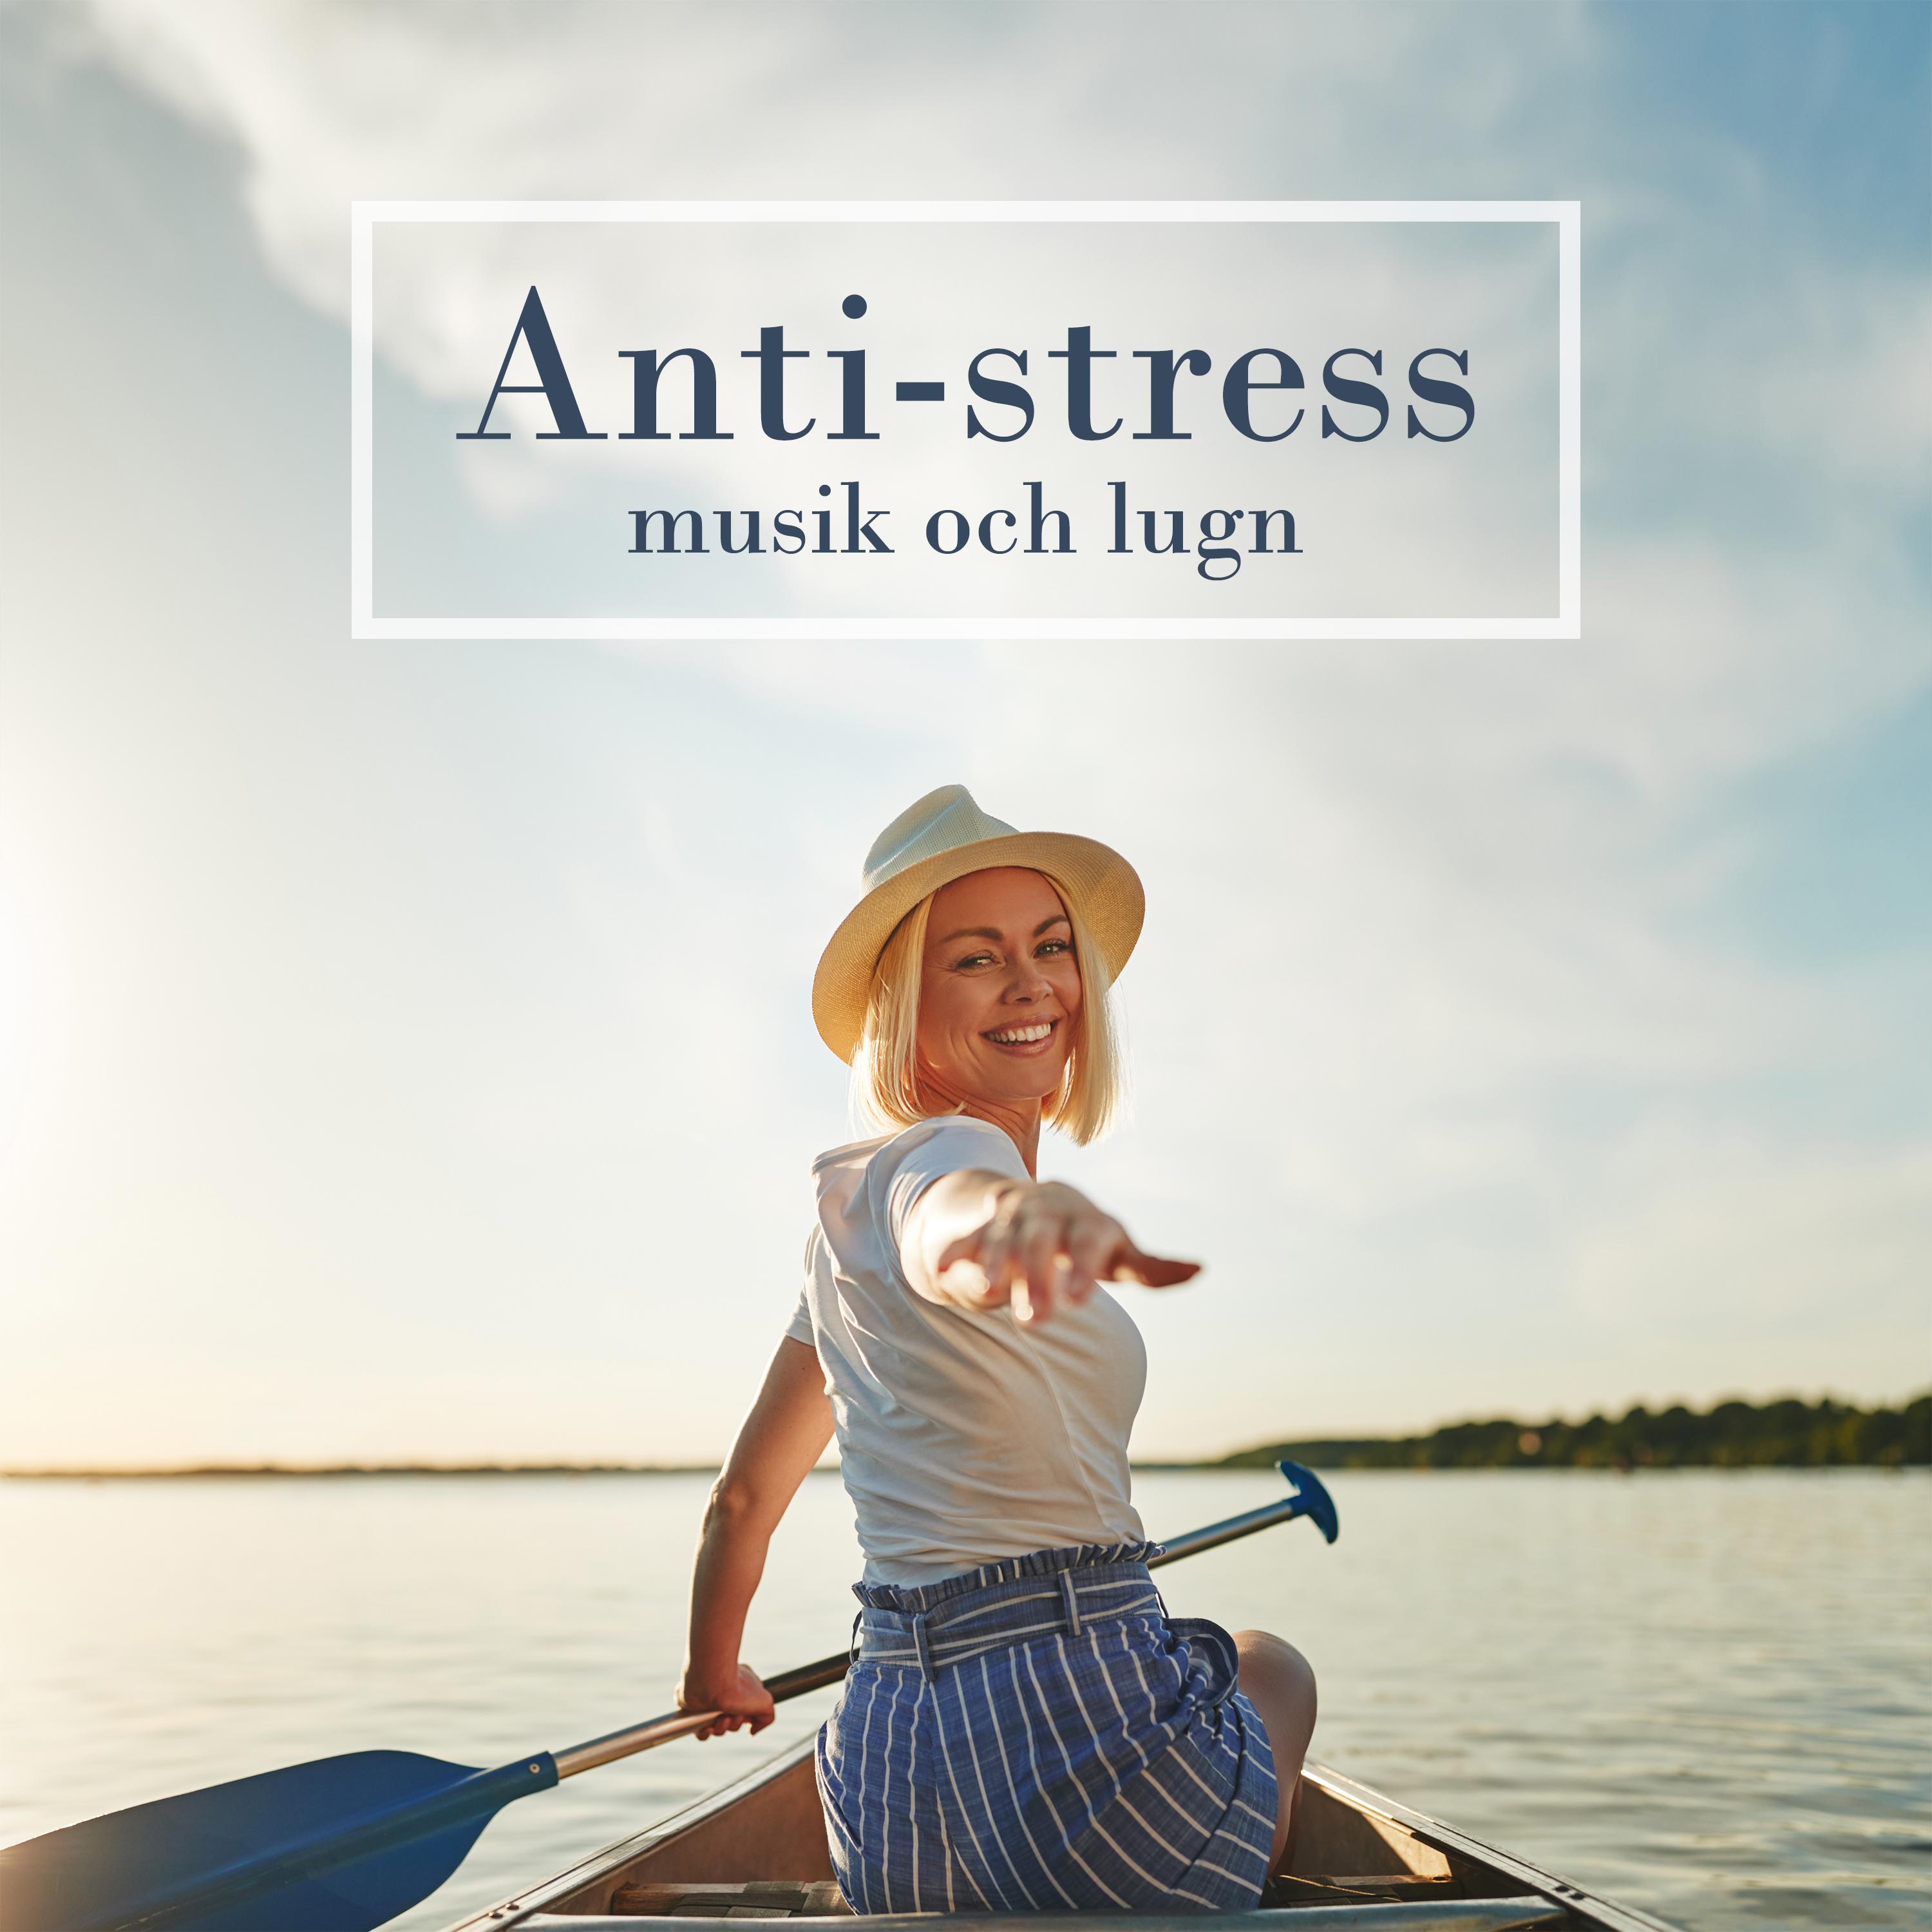 Anti-stress musik och lugn